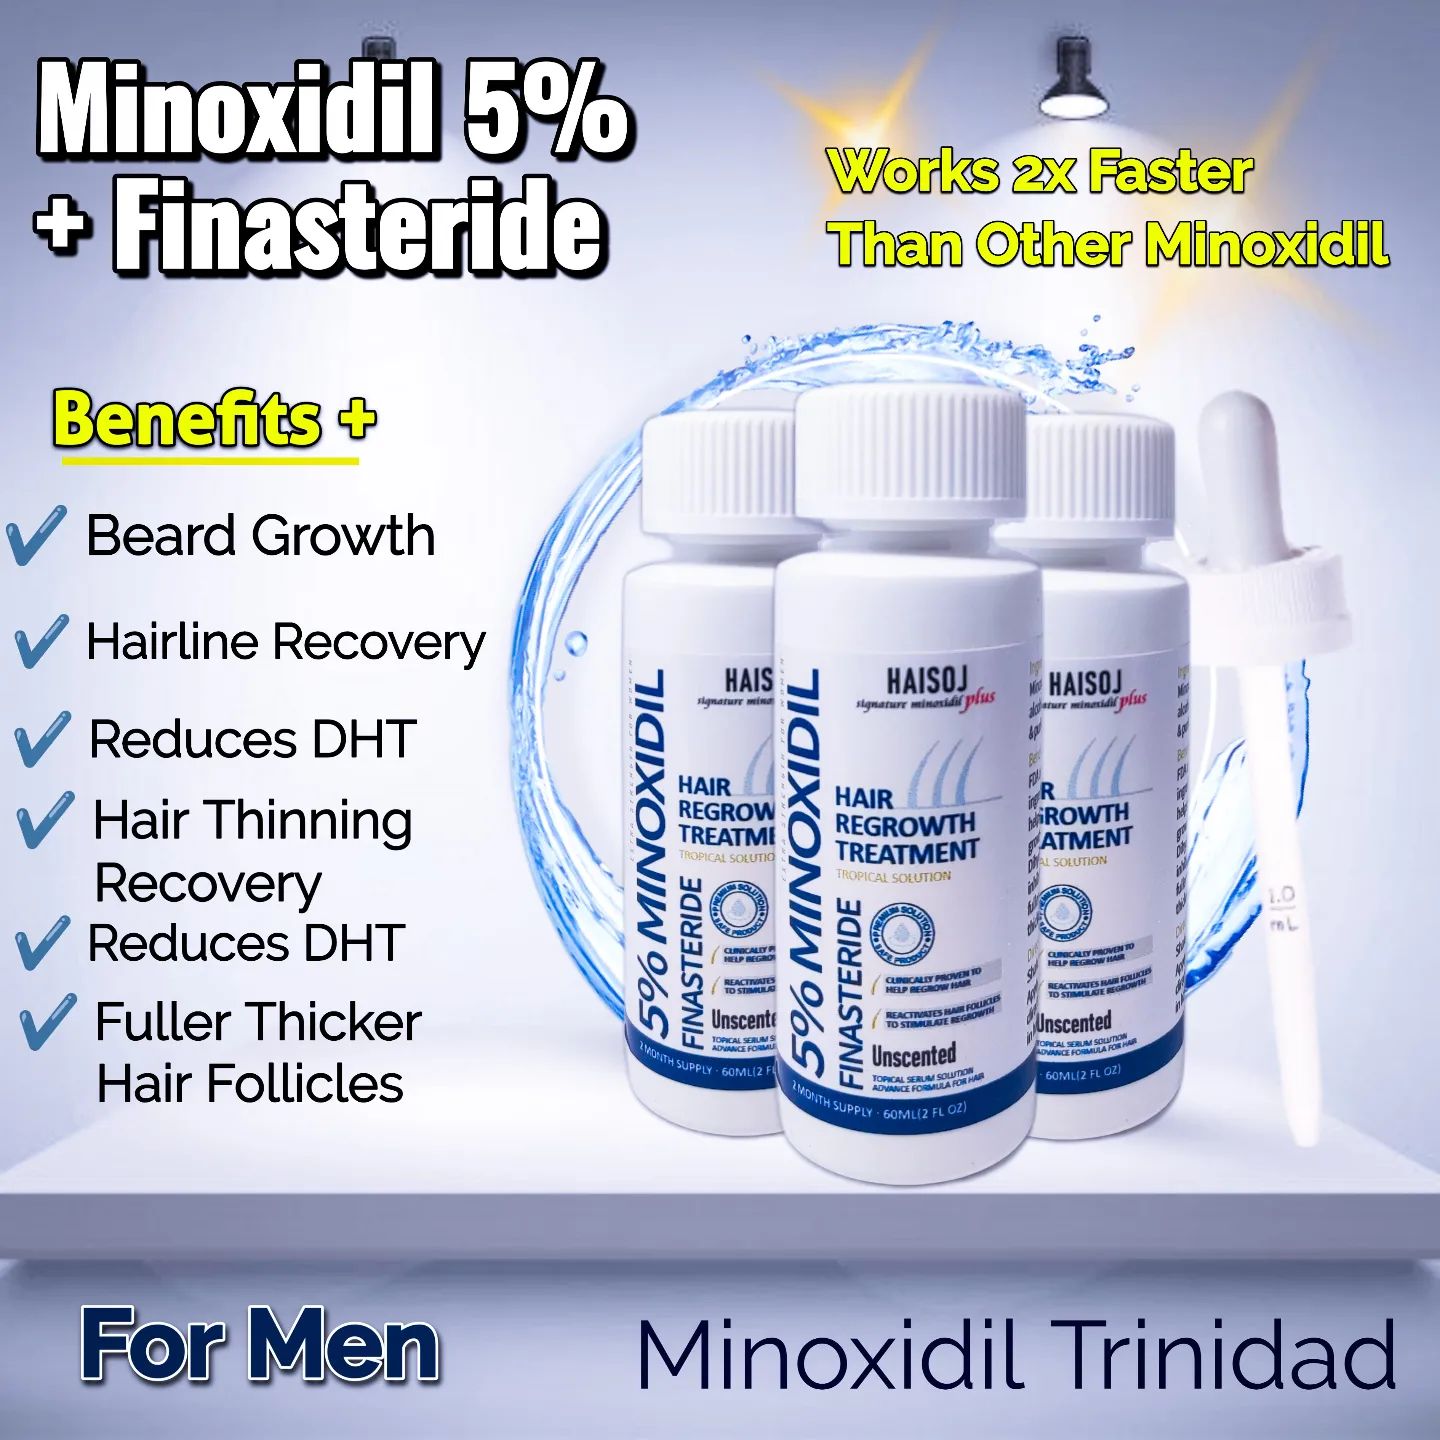 MinoxidilTT